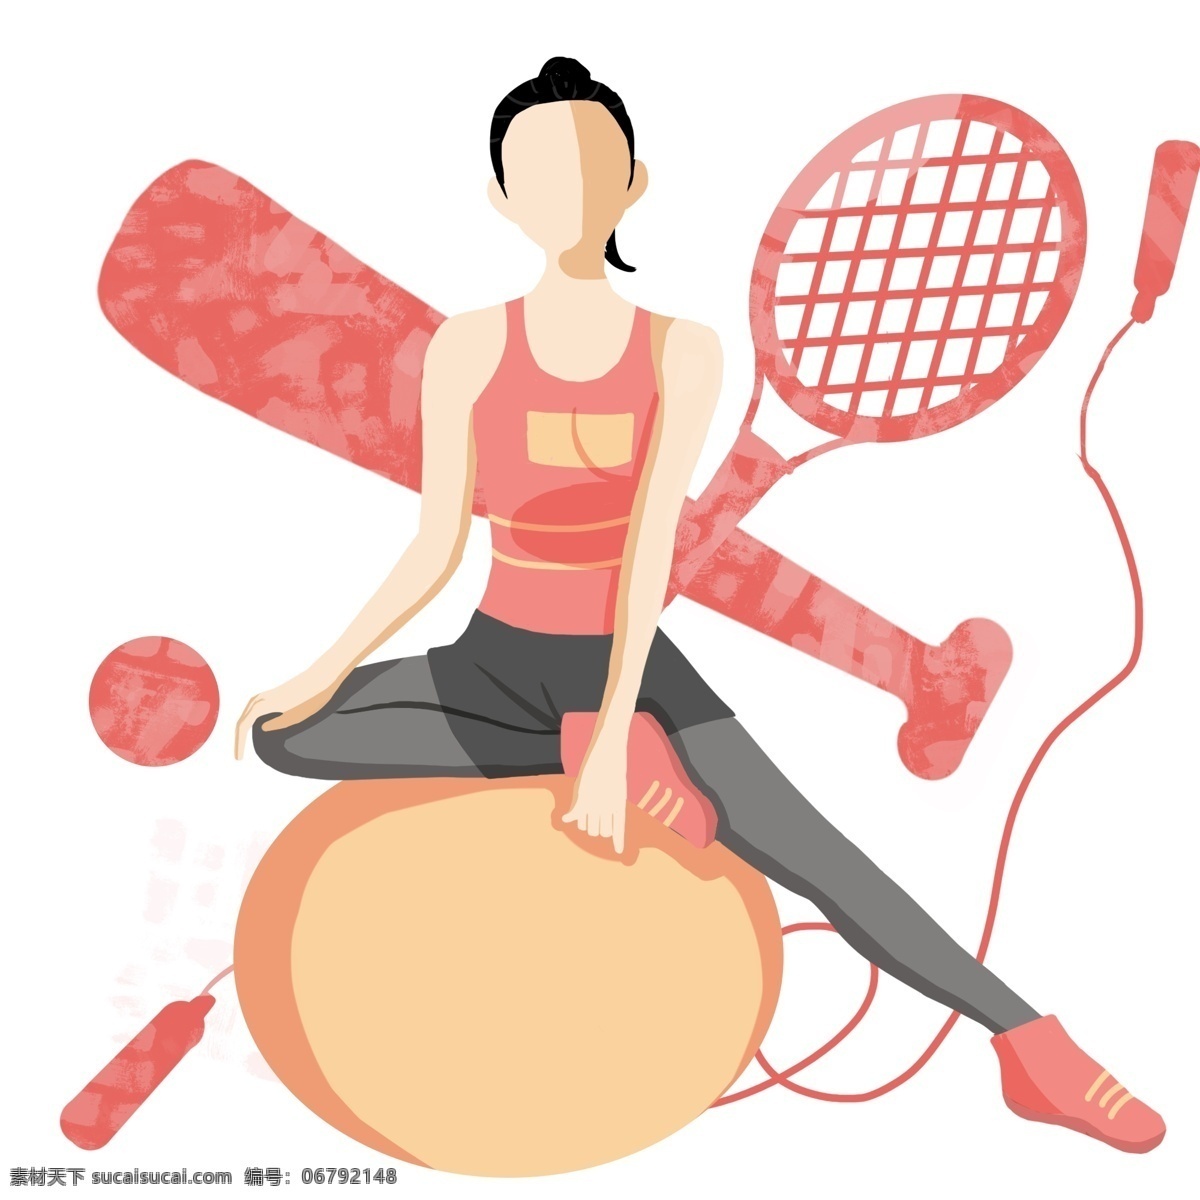 瑜伽 运动 卡通 插画 瑜伽的运动 卡通插画 运动插画 健身运动 锻炼身体 活动筋骨 减肥瘦身插画